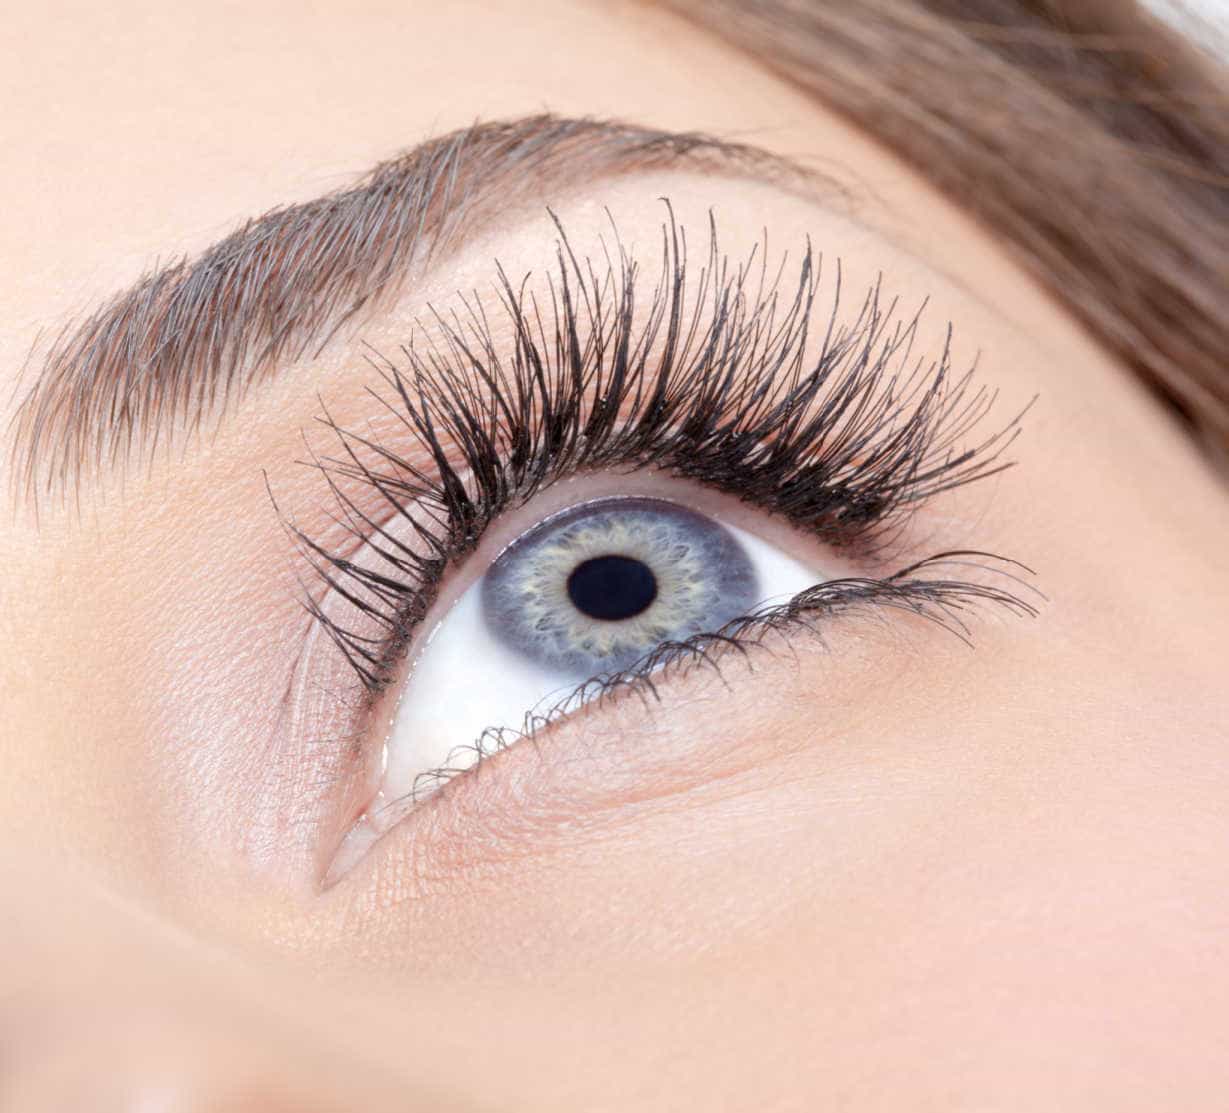 Get certified in Eyelash Extensions